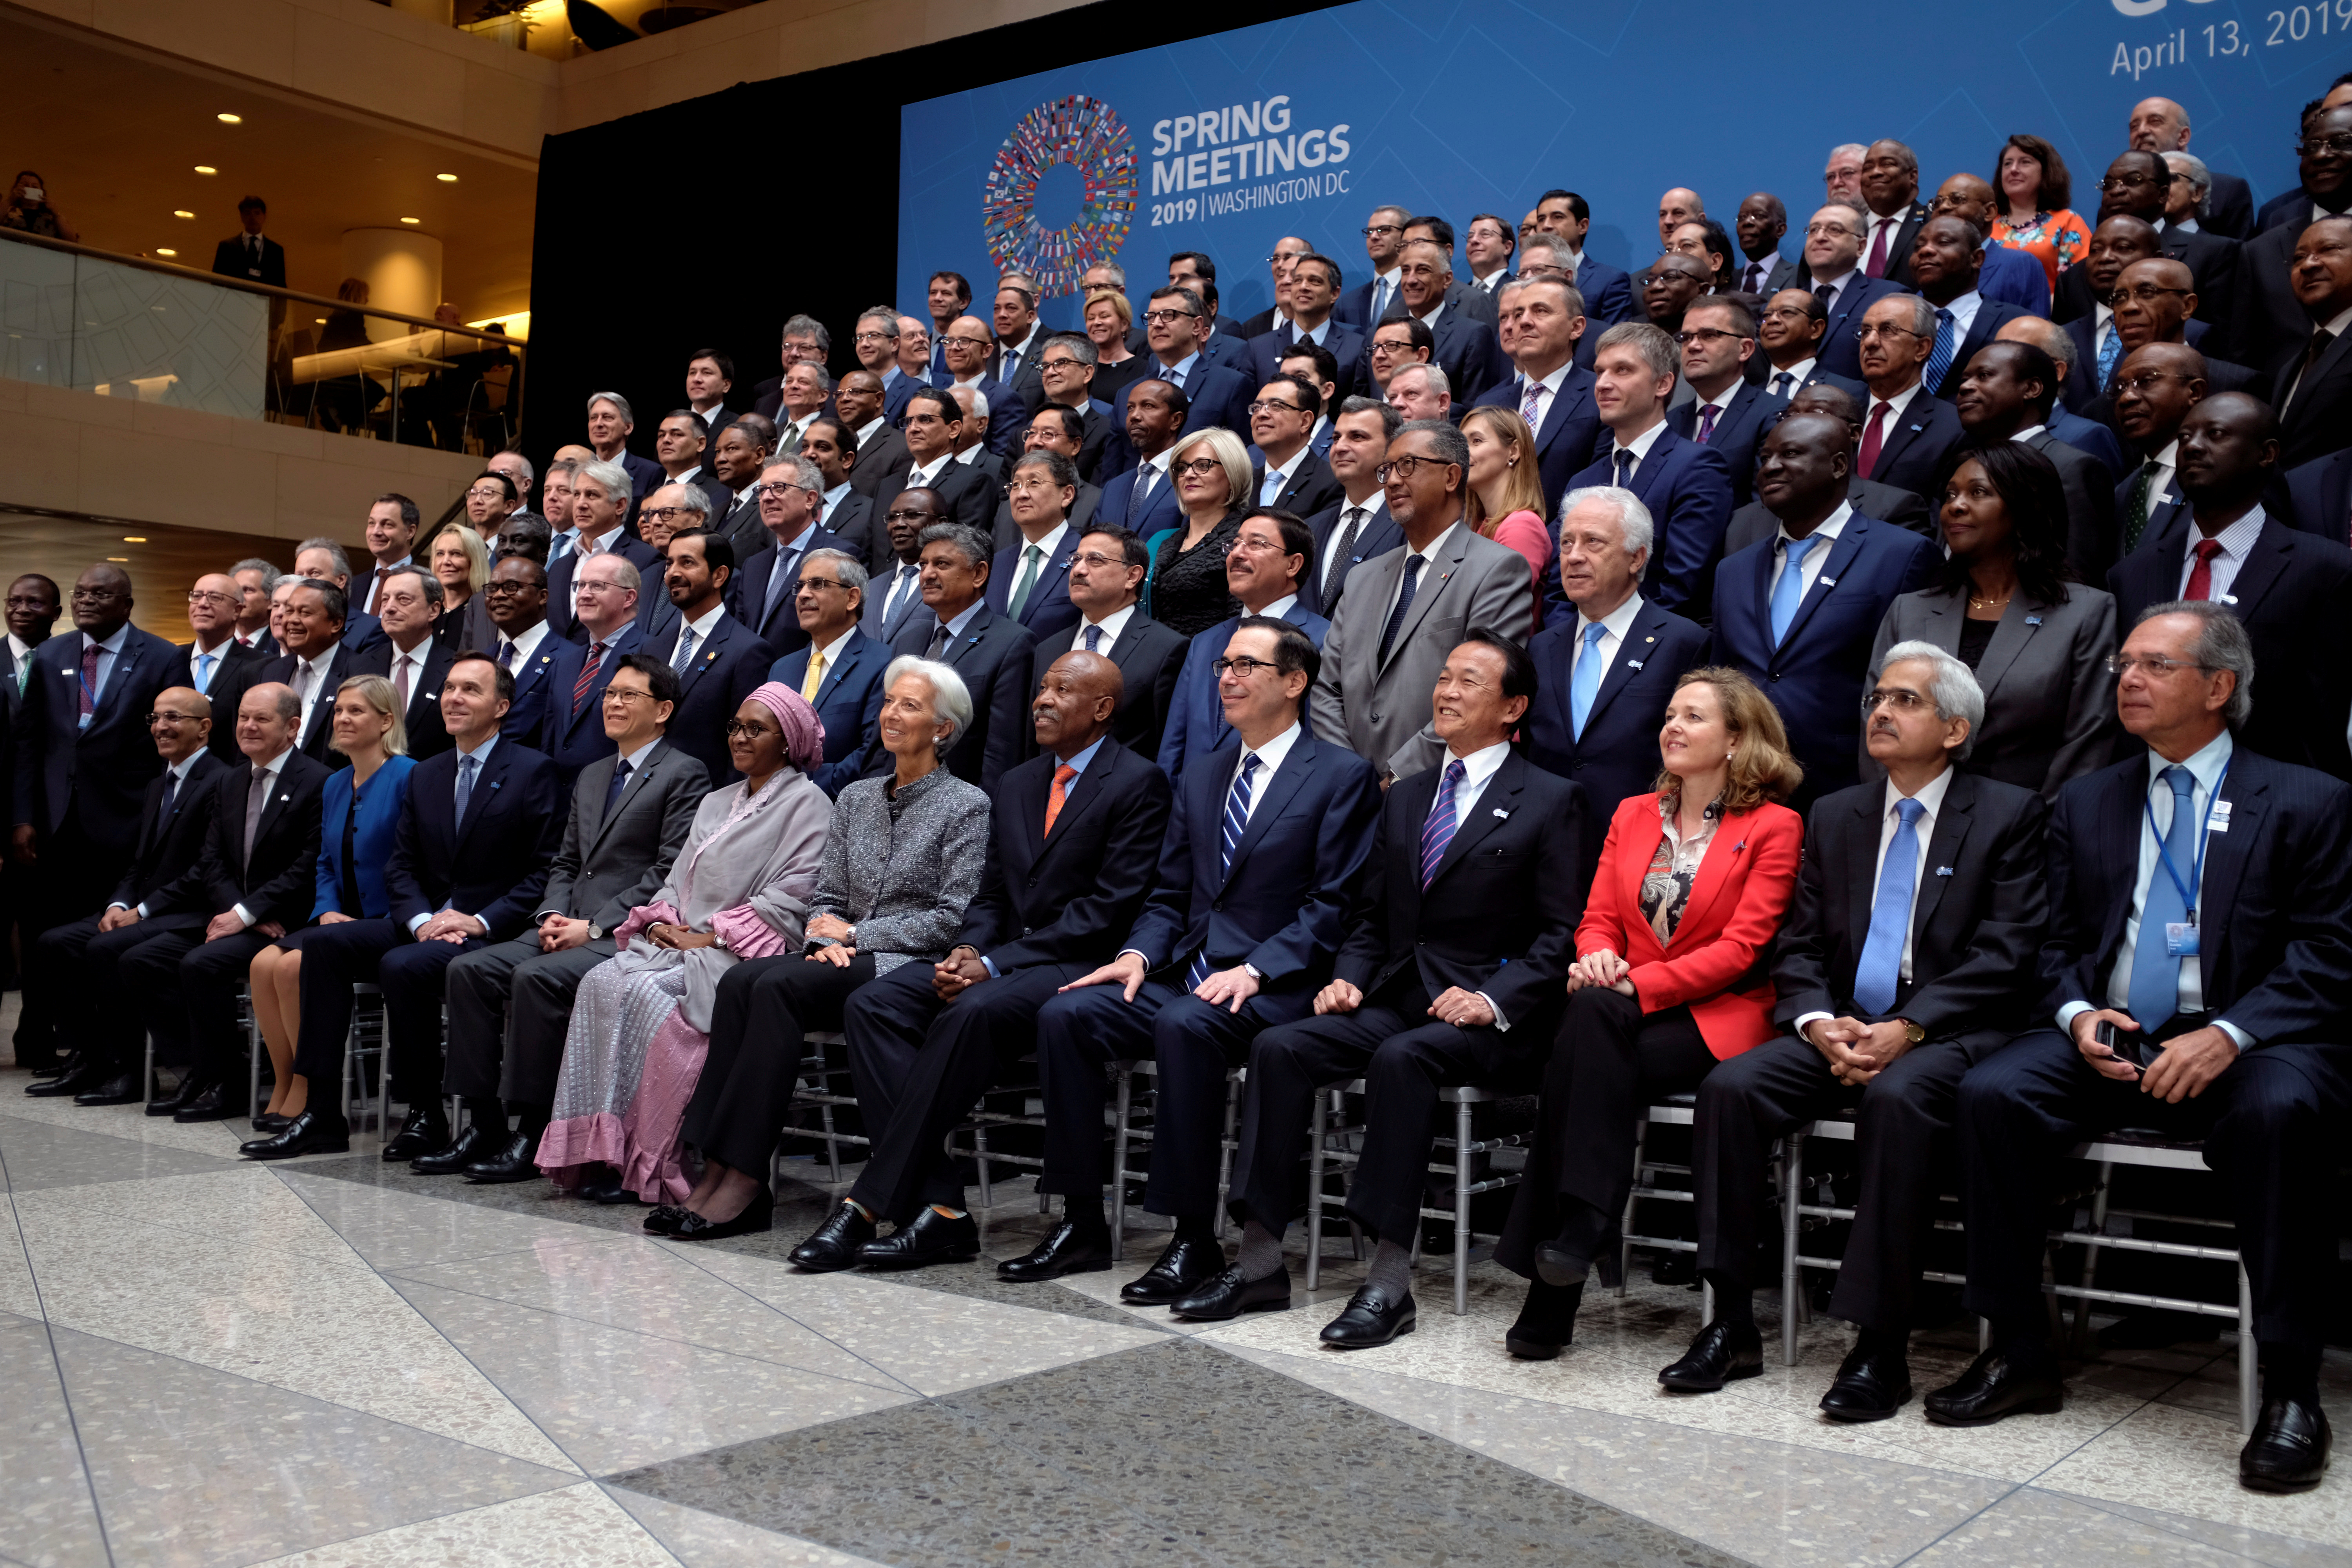 La última reunión de primavera del FMI presencial fue en 2019, cuando la directora gerente aún era Christine Lagarde. REUTERS/James Lawler Duggan/File Photo